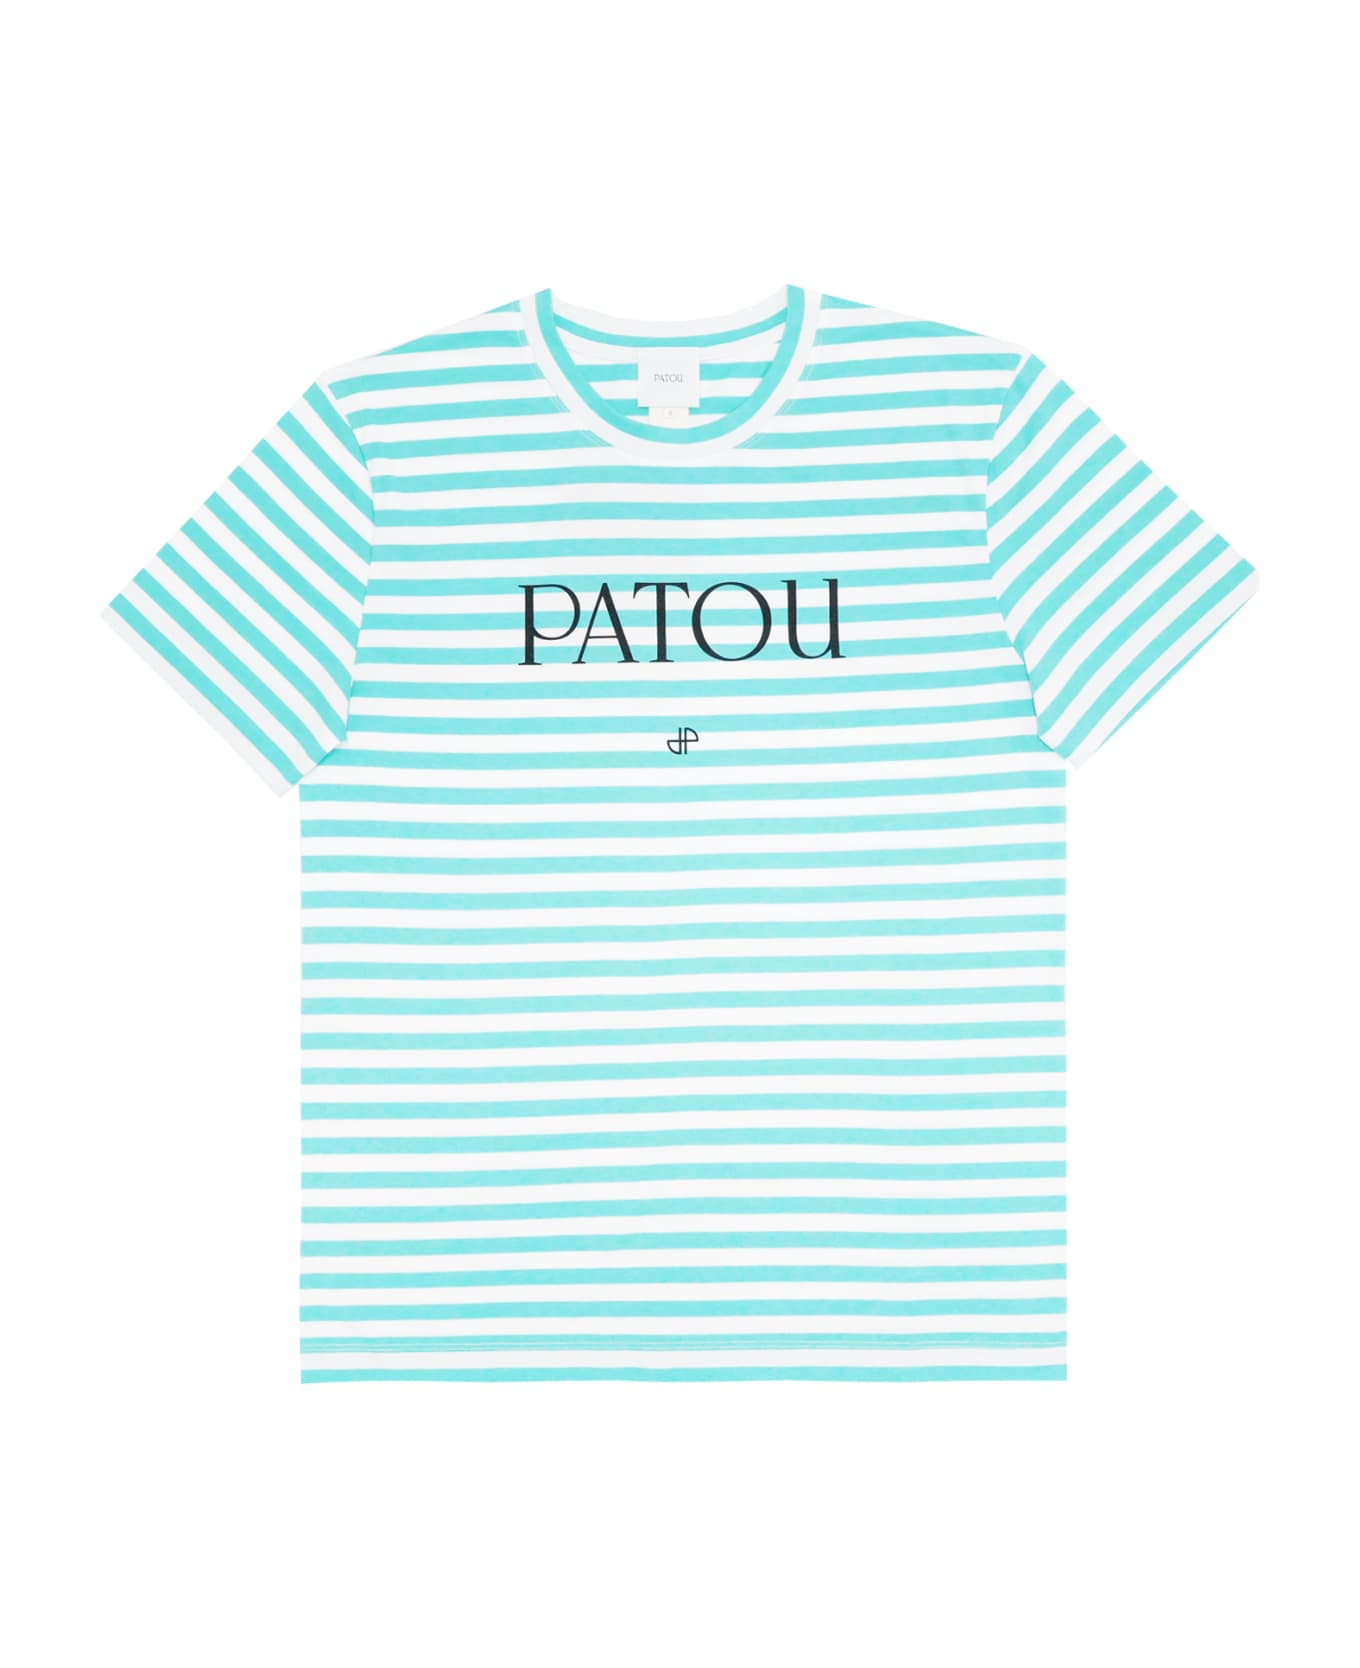 Patou T-shirt - Green